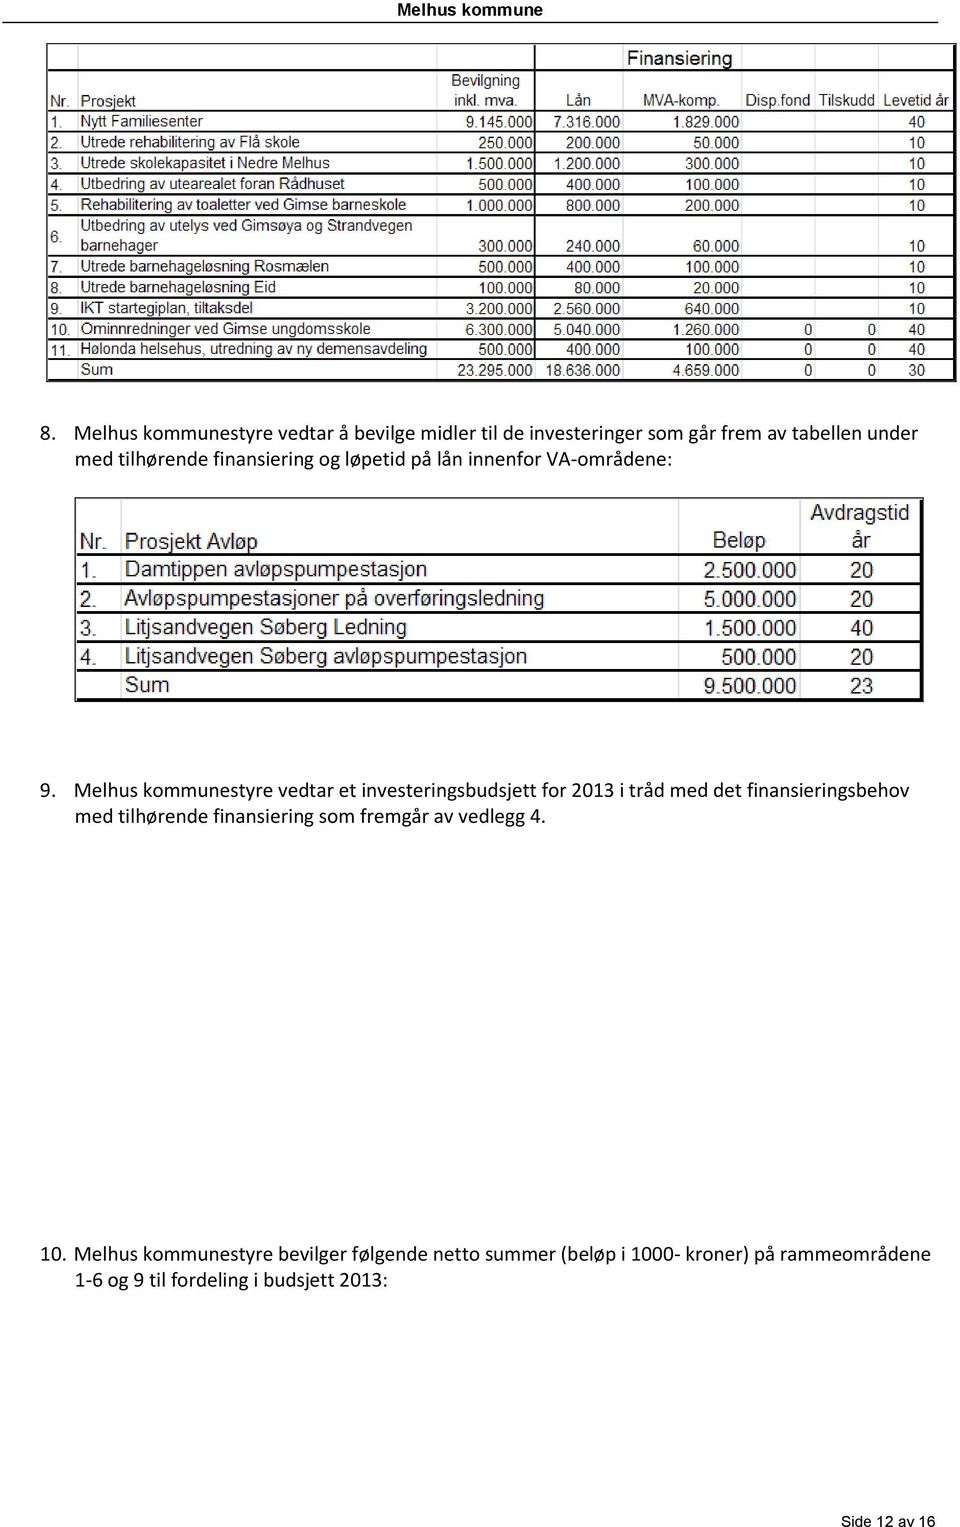 Melhus kommunestyre vedtar et investeringsbudsjett for 2013 i tråd med det finansieringsbehov med tilhørende